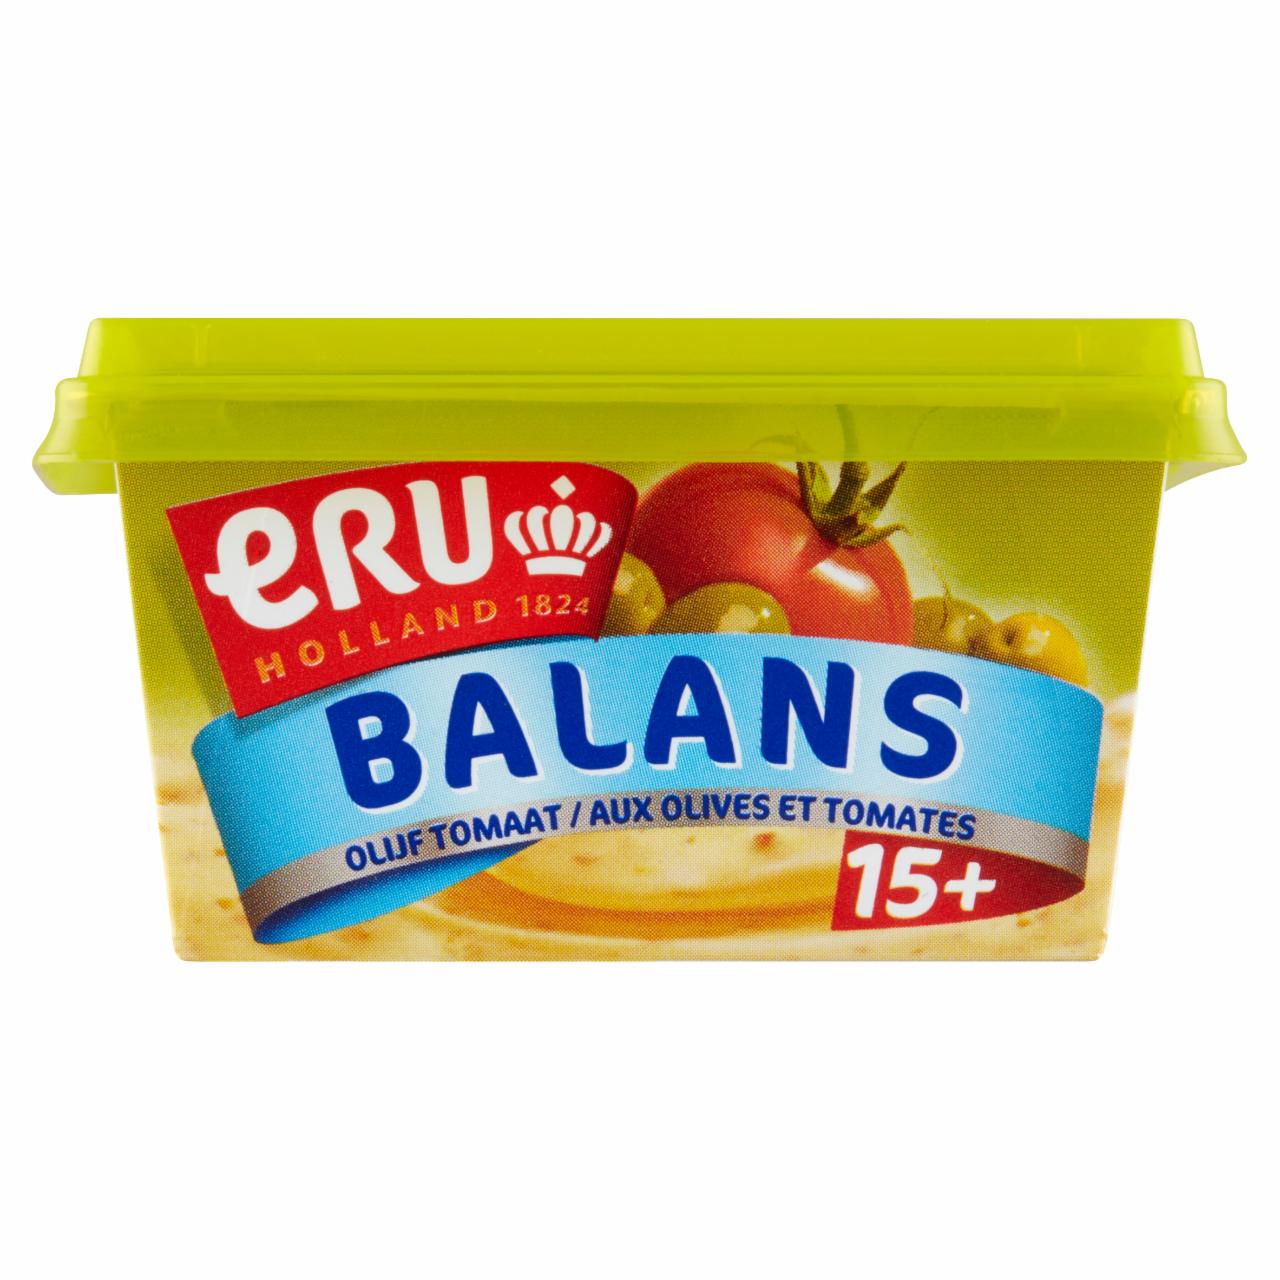 Képek - ERU Balans Olijf Tomaat kenhető zsírszegény ömlesztett sajtkrém olívabogyóval és paradicsommal 100 g